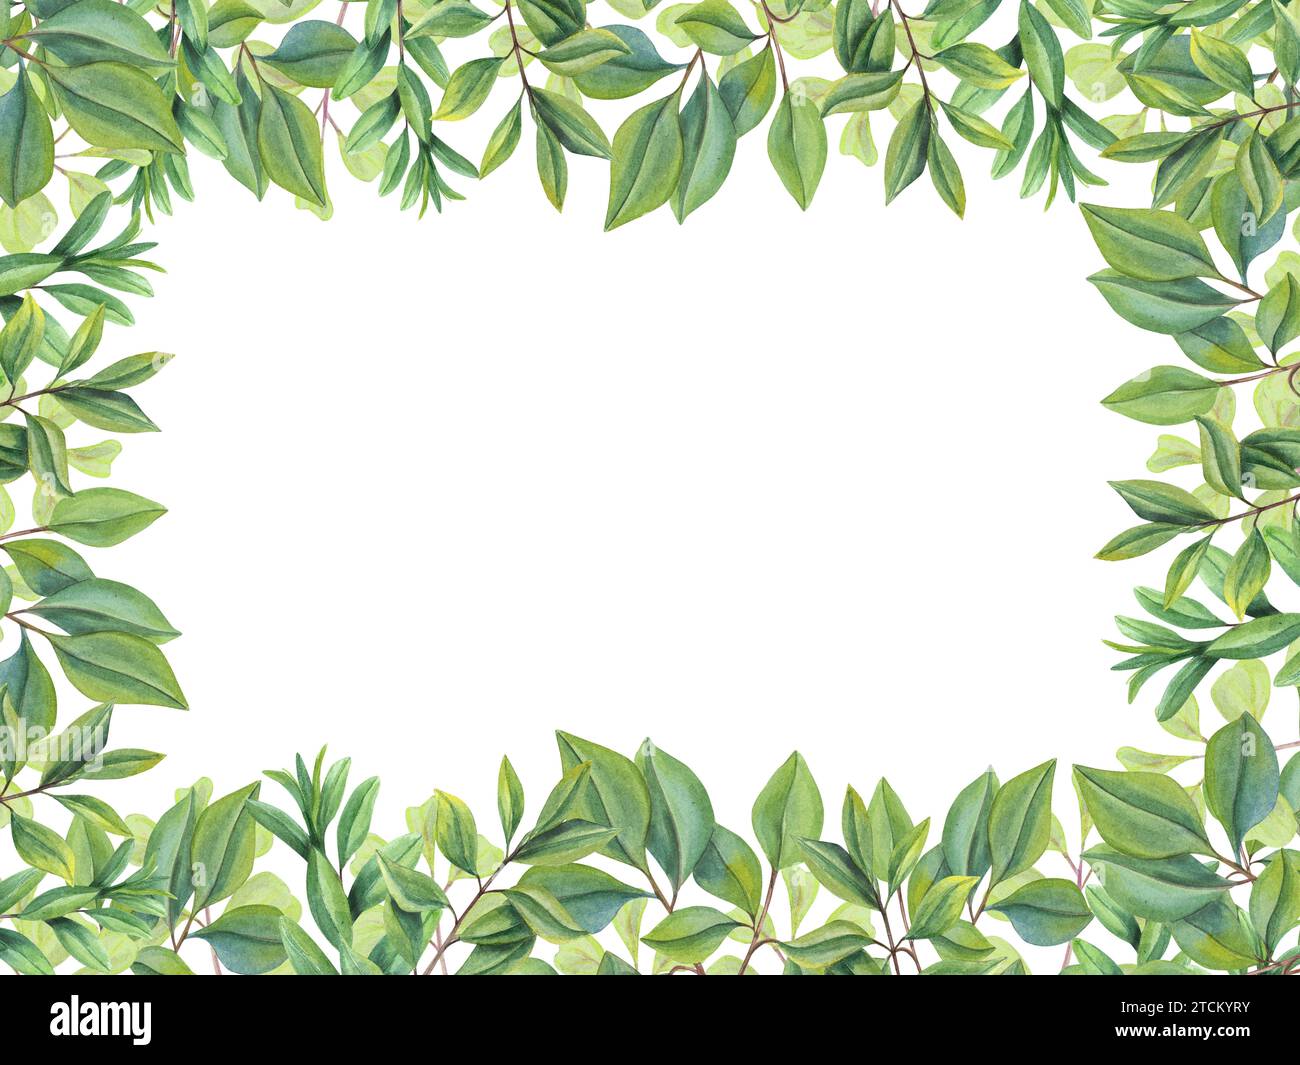 Abstrakte grüne Blätter. Horizontaler Rahmen mit Ästen, grüne Pflanzen. Teeblätter. Kräuterkomposition mit Textraum. Abbildung Stockfoto